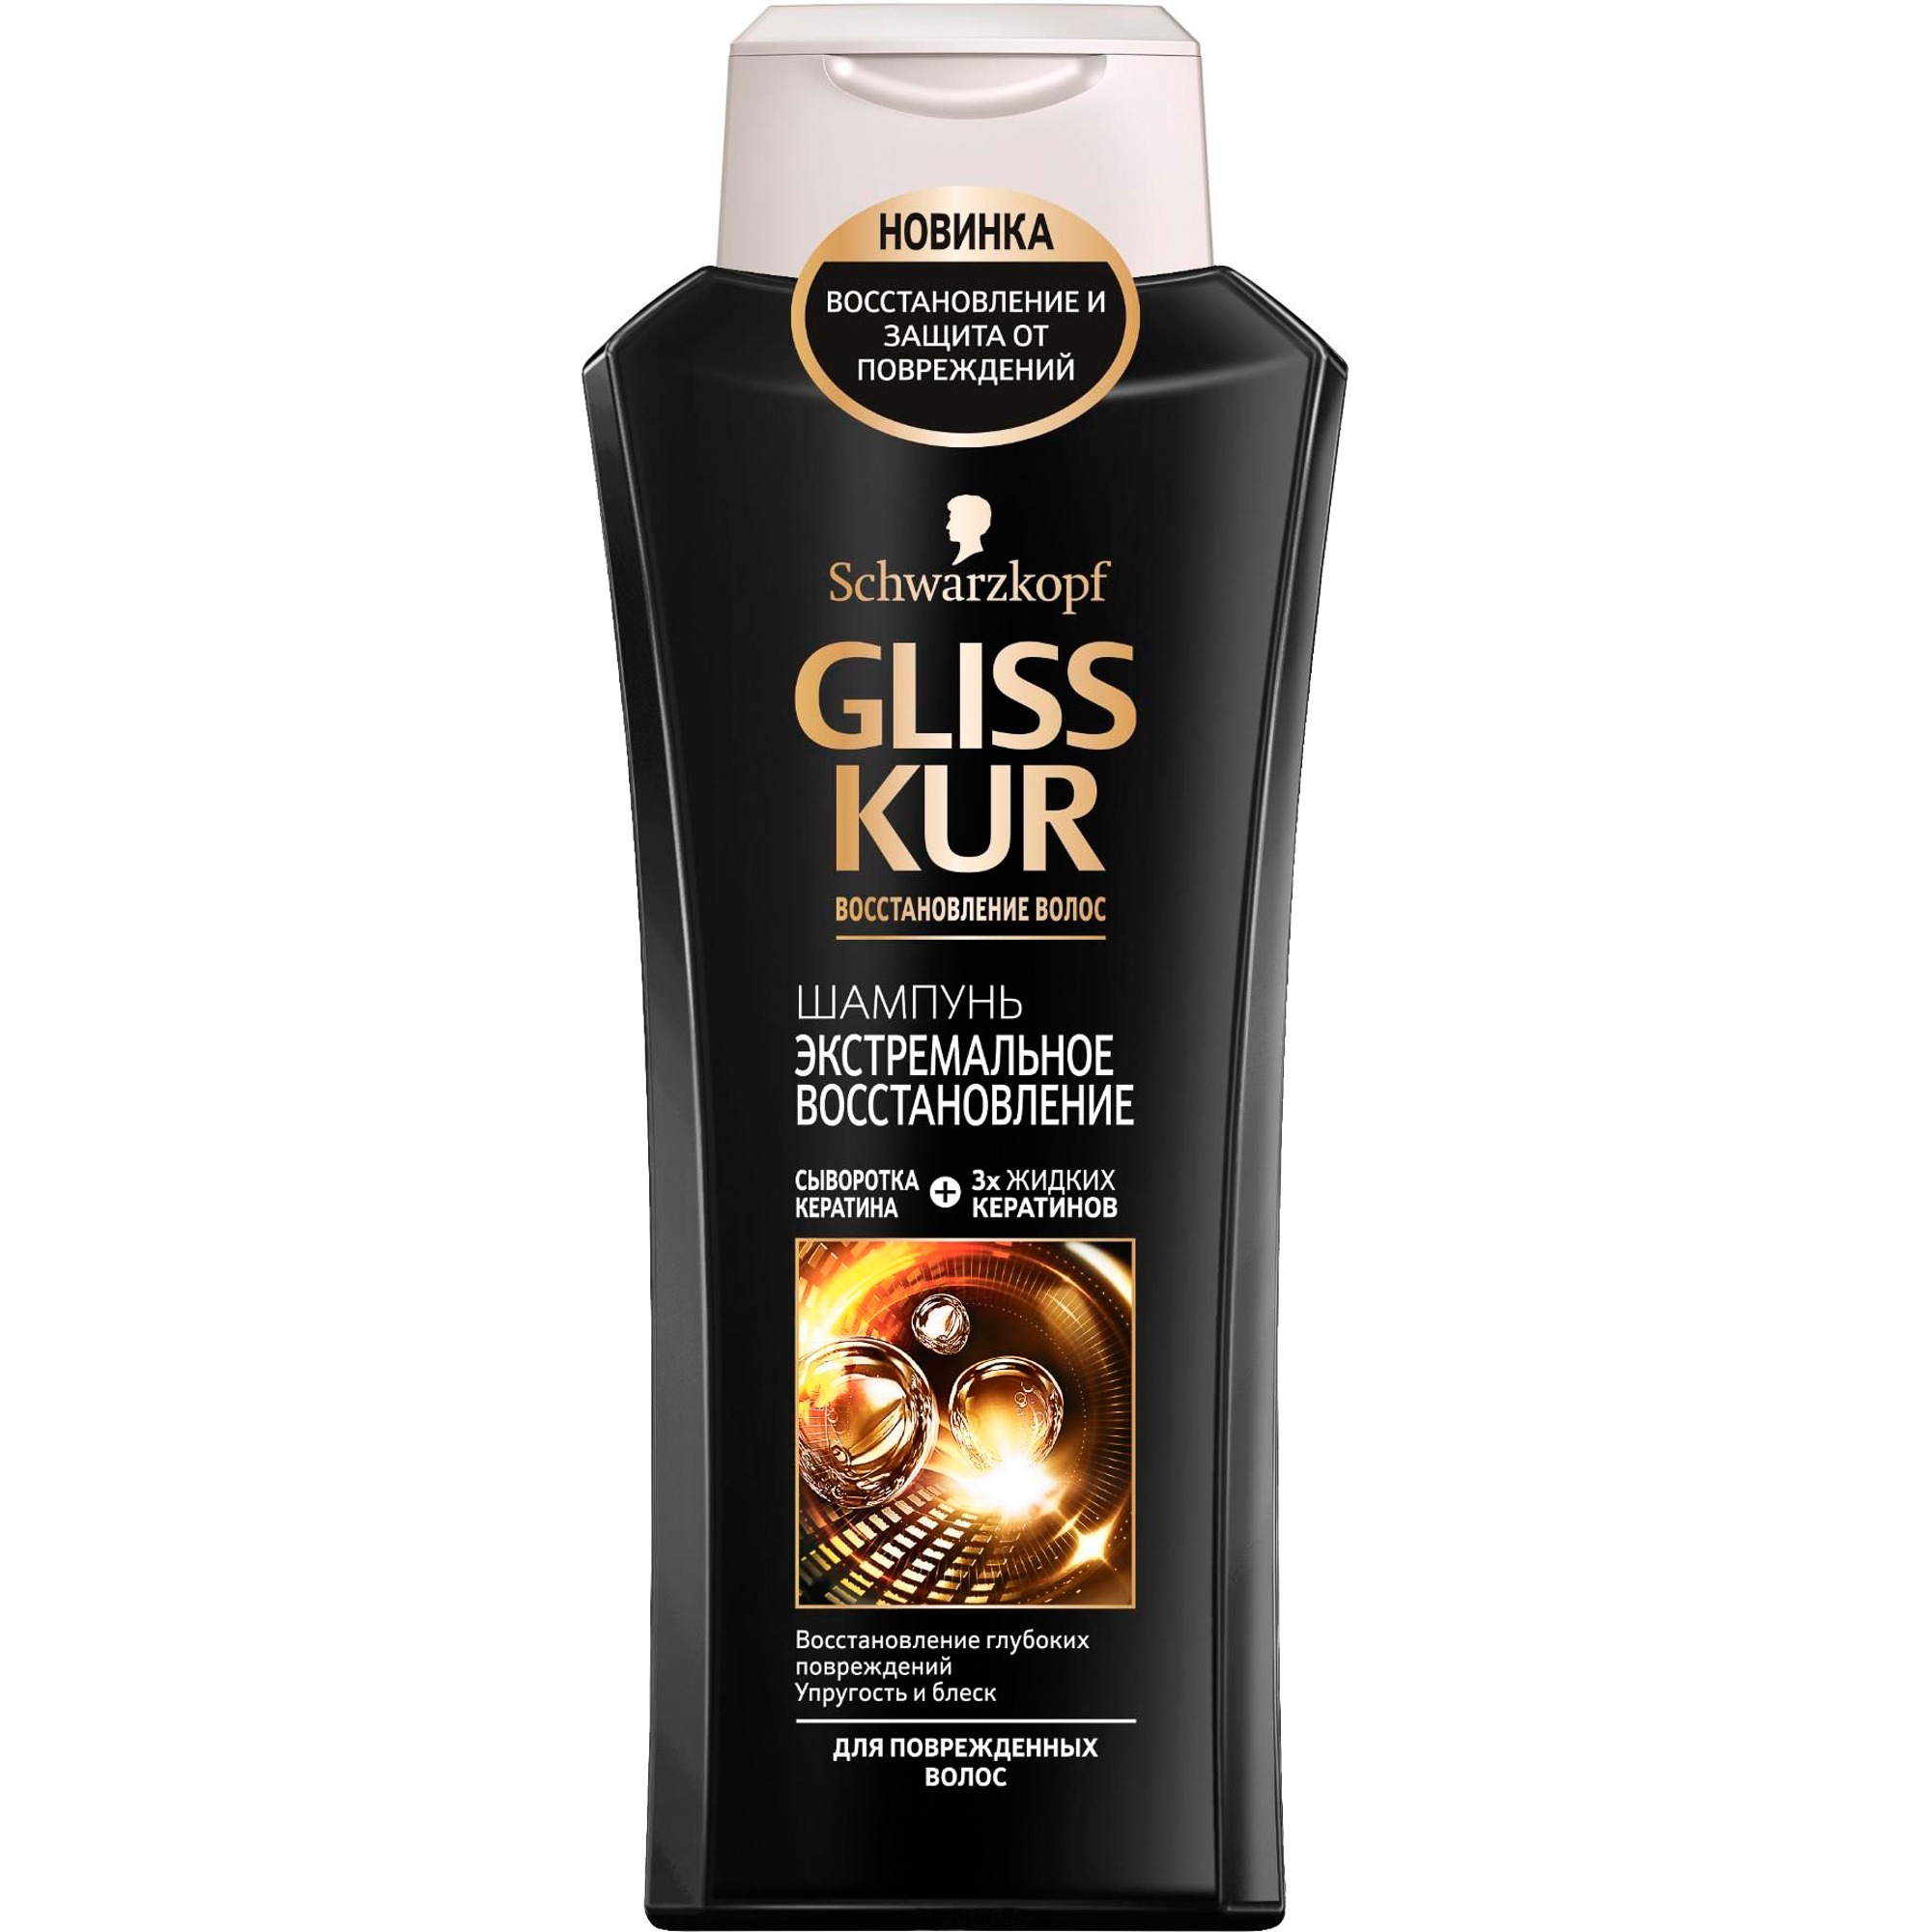 Шампунь GLISS KUR Экстремальное восстановление 400 мл fresh splash шампунь восстановление окрашенных волос 400 мл